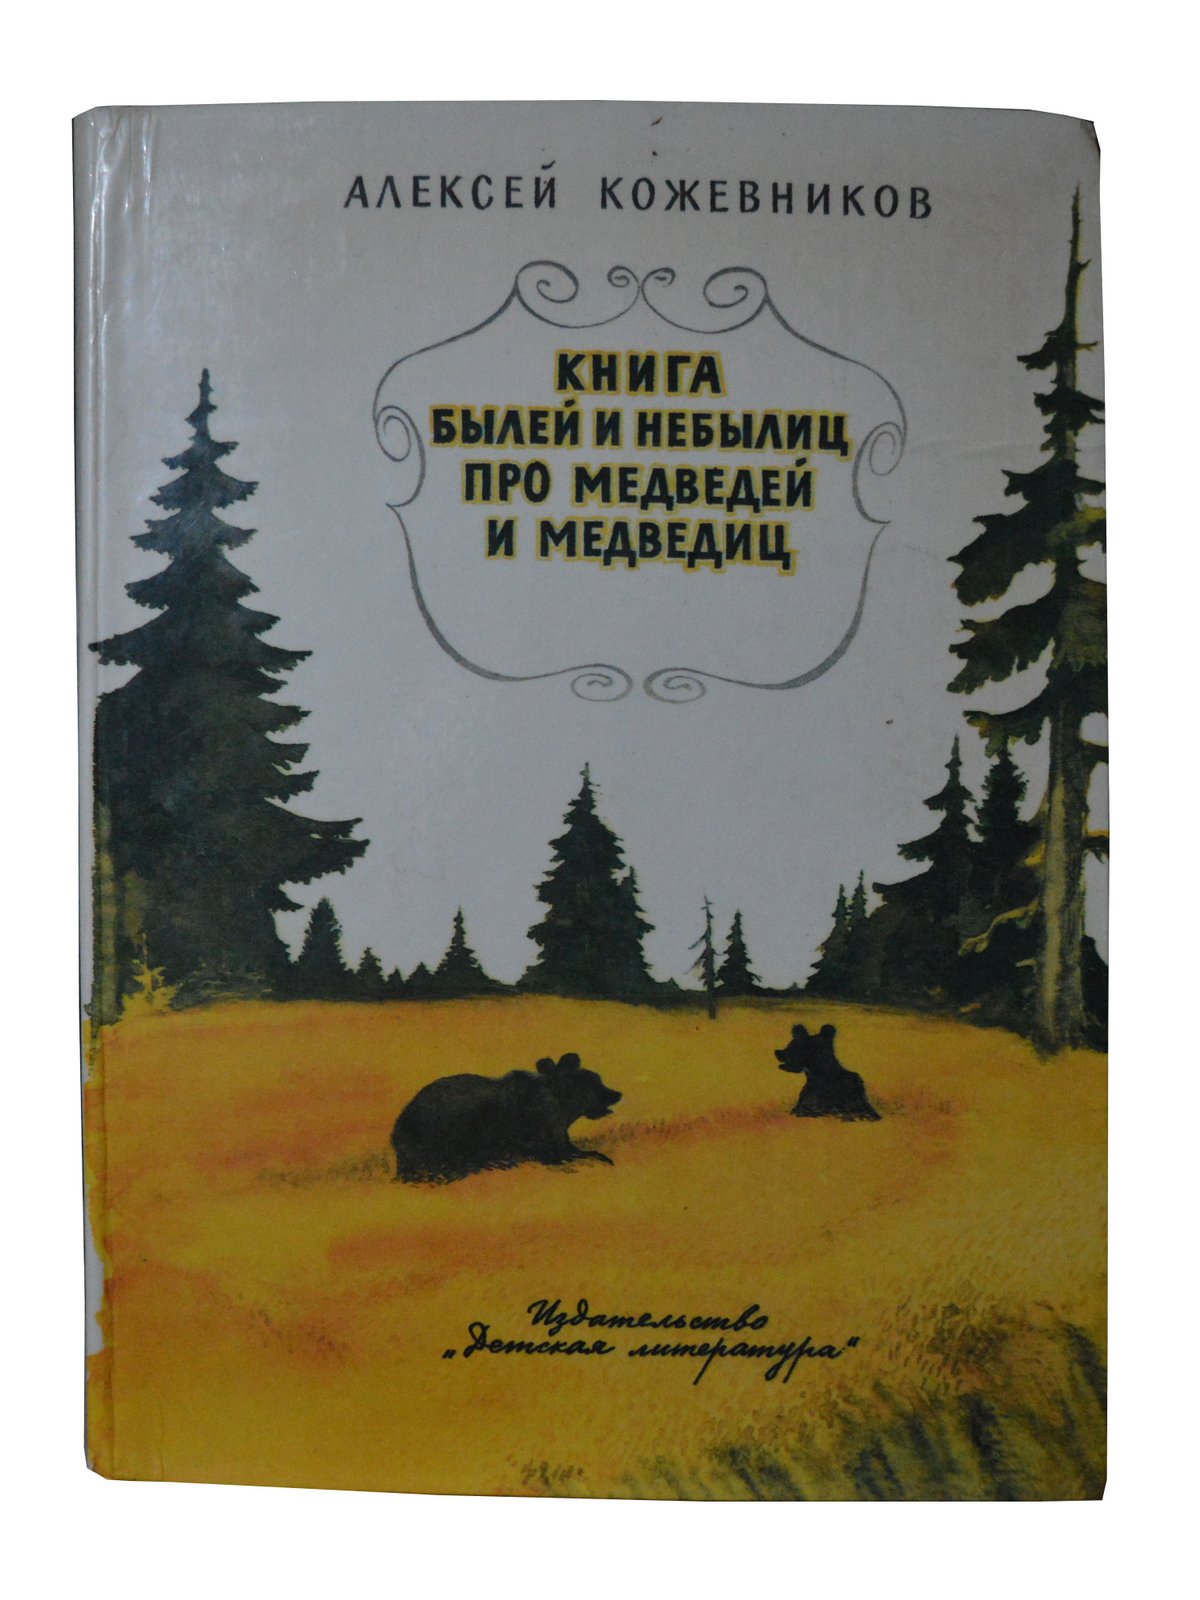 Кожевников А.В. (Книга былей и небылиц про медведей и медведиц).